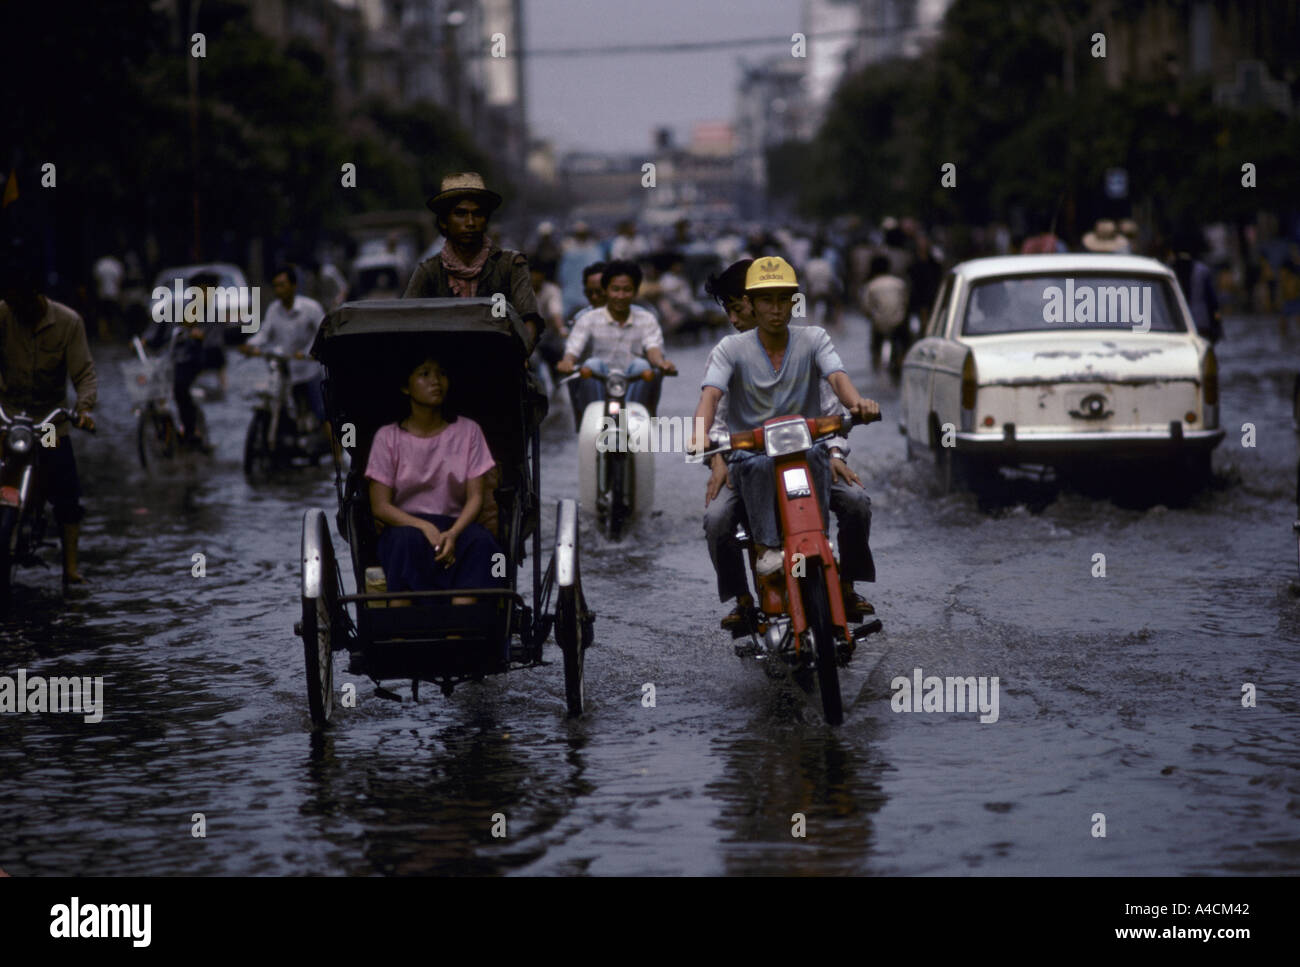 Phnom Penh; Verkehr von Rikschas, Fahrräder und Autos bewegt sich durch überflutete Straßen nach dem Monsunregen. Stockfoto